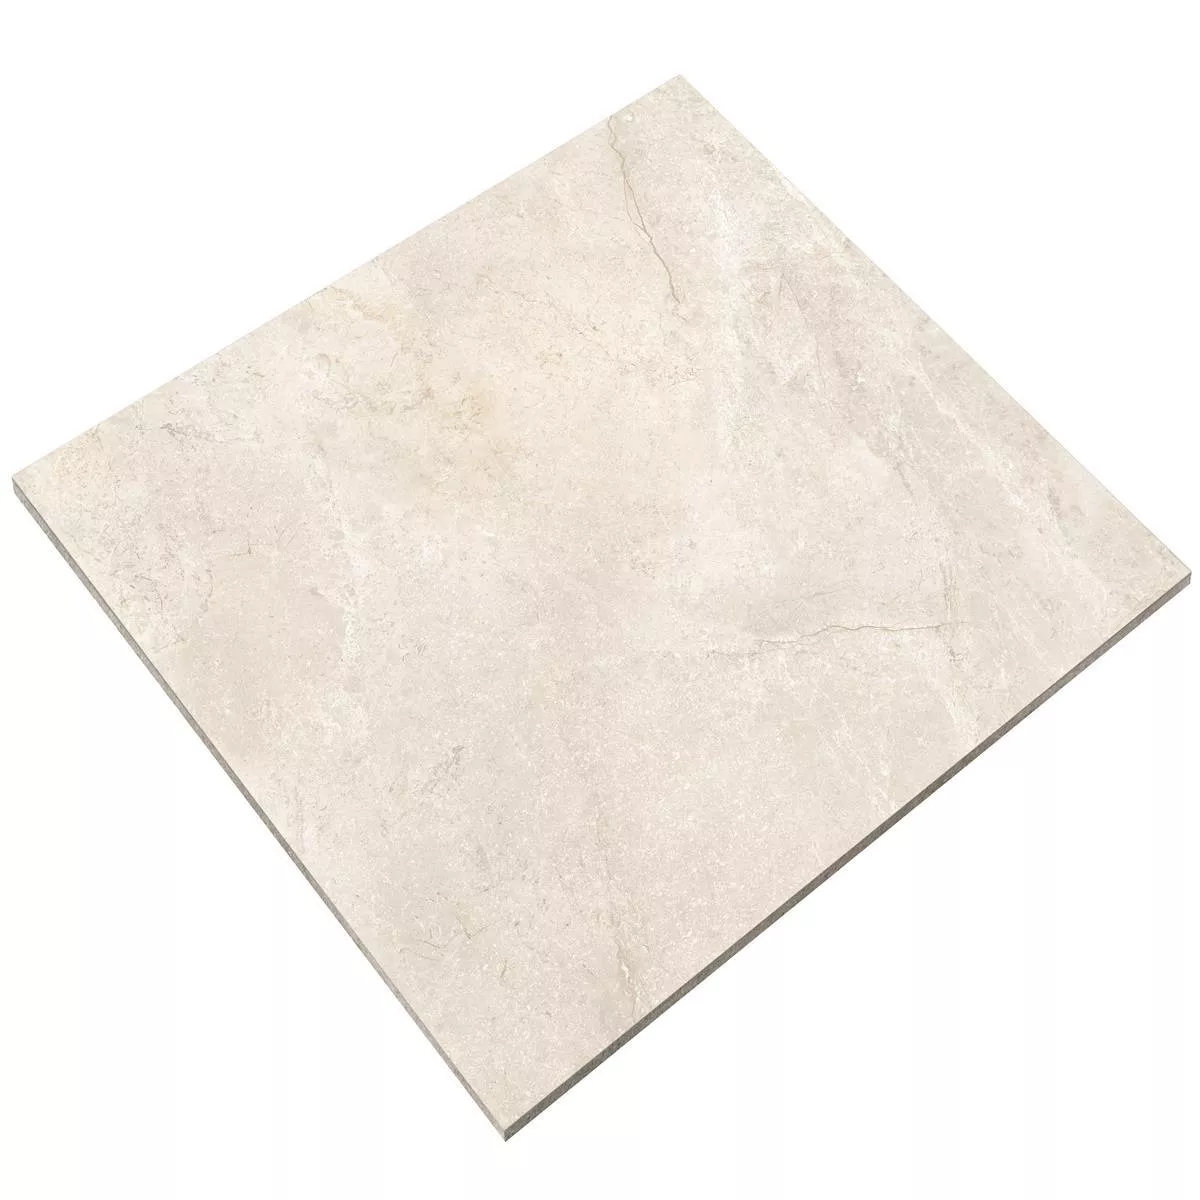 Πρότυπο από Πλακάκια Δαπέδου Pangea Μαρμάρινη Όψη Παγωμένος Cream 120x120cm